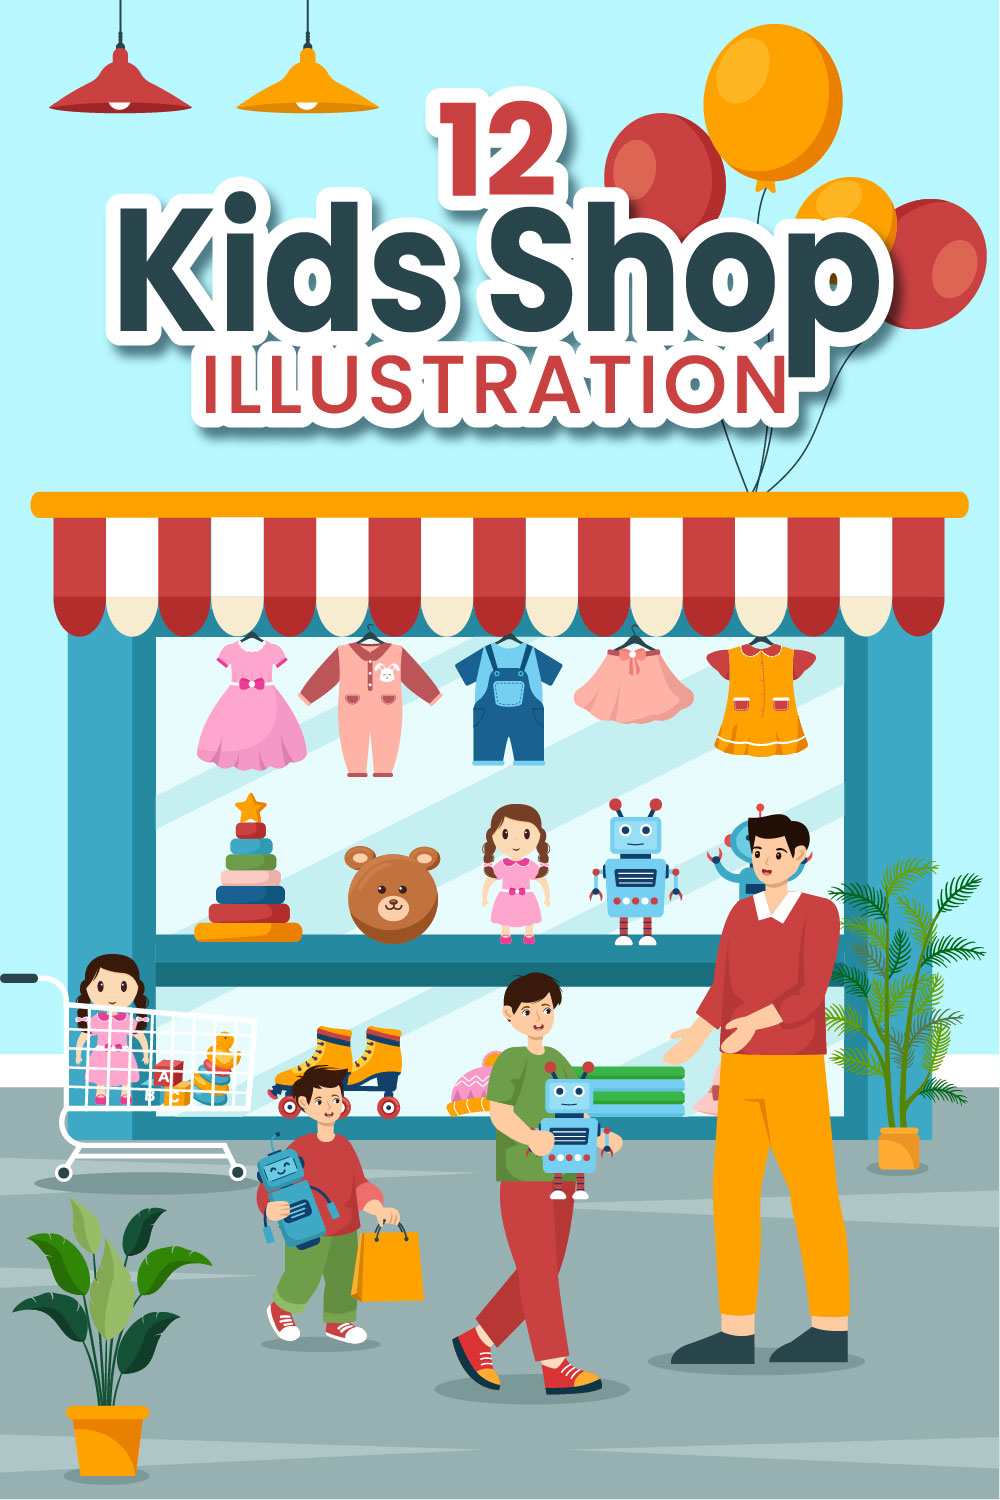 12 Kids Shop Illustration pinterest preview image.